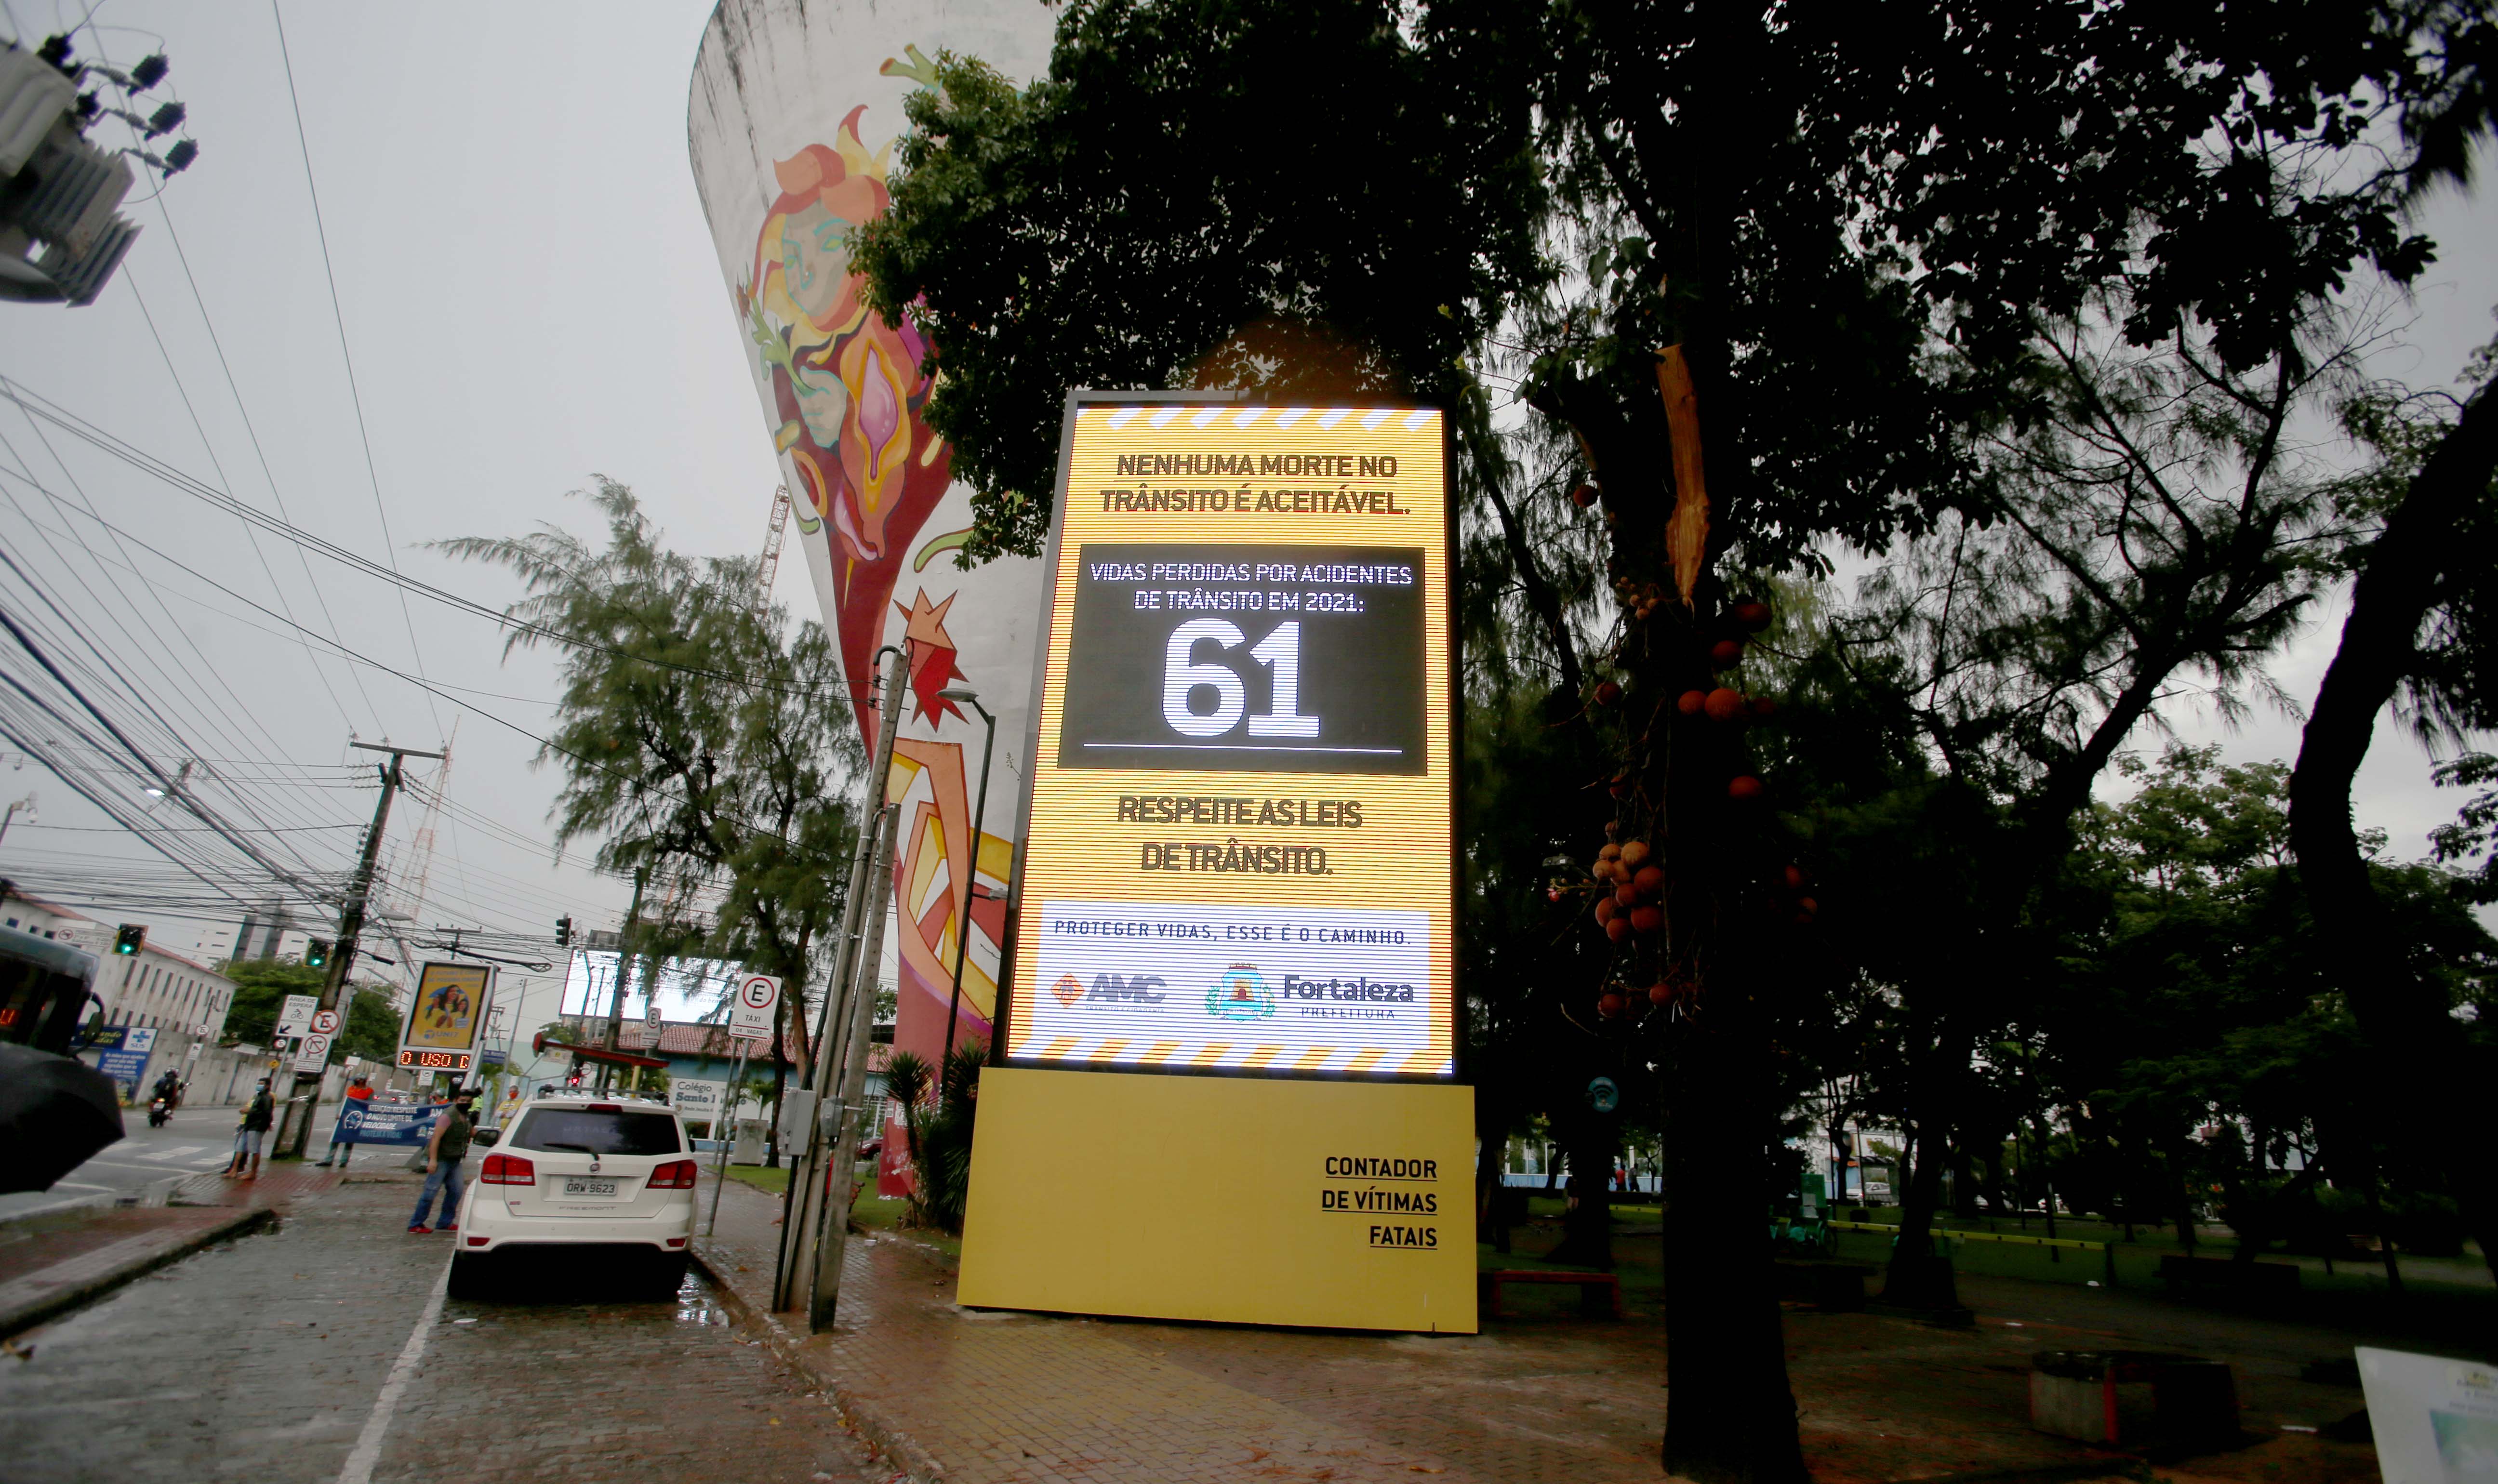 painel de contagem de óbitos no trânsito em Fortaleza. A estrutura mede 7 metros de altura por 3 metros de largura